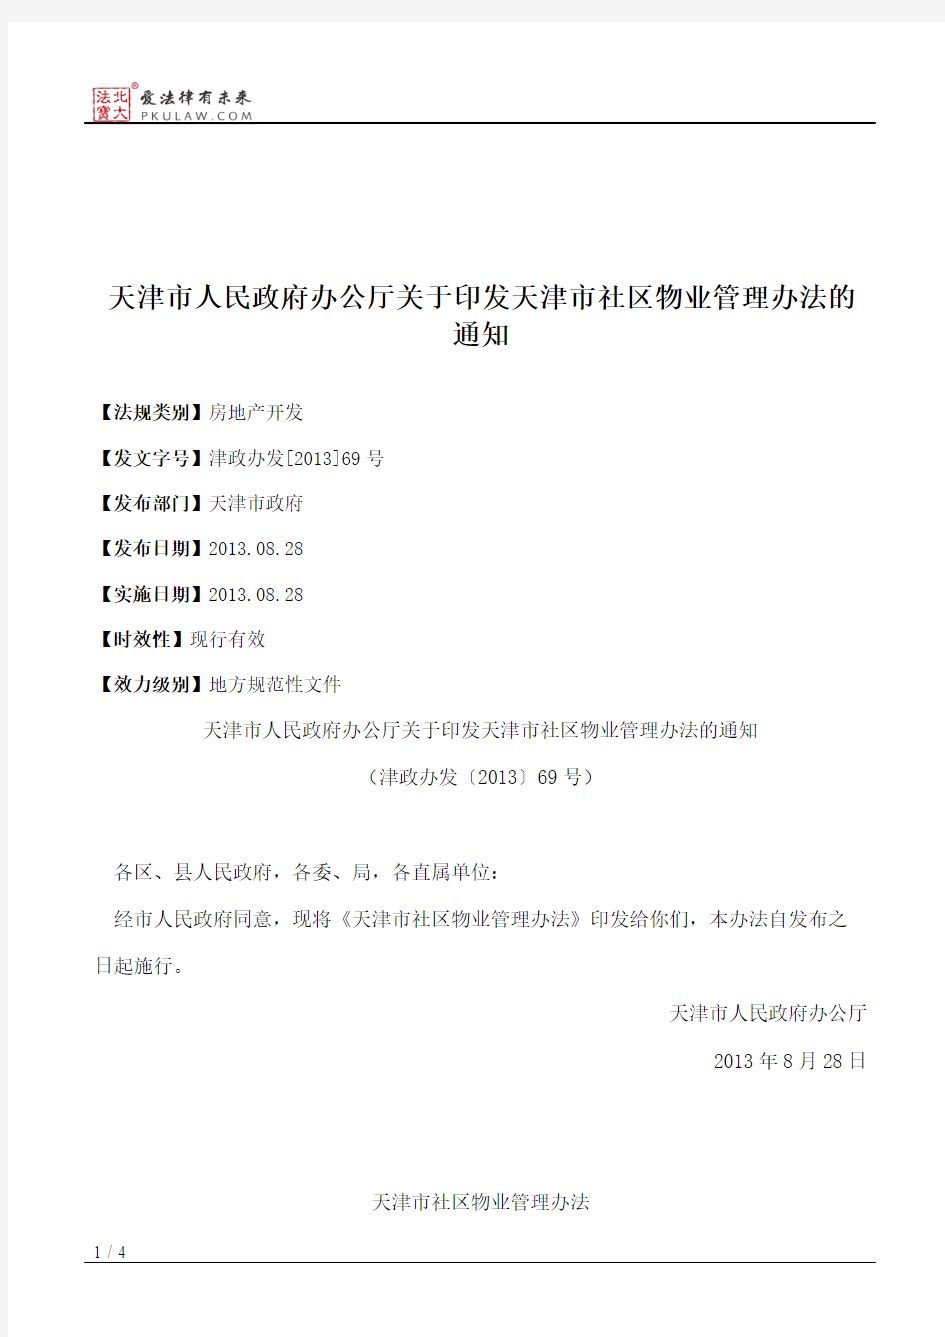 天津市人民政府办公厅关于印发天津市社区物业管理办法的通知